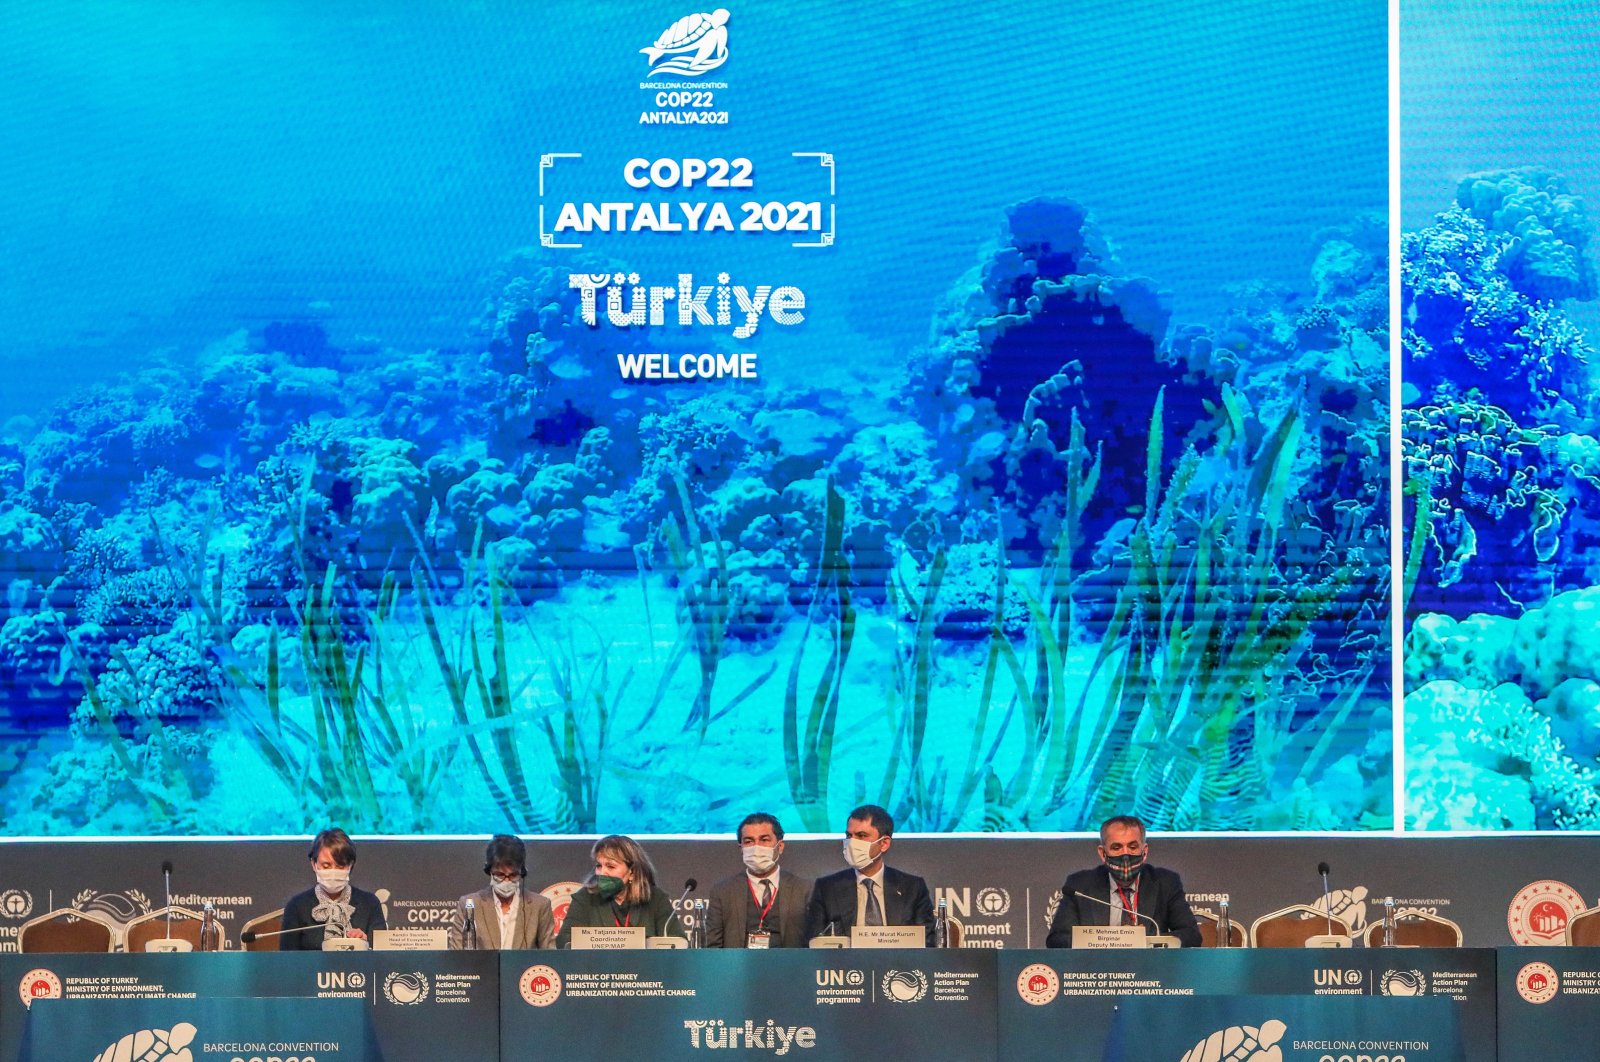 KTT Internasional untuk Med yang lebih bersih dimulai di Antalya . Turki